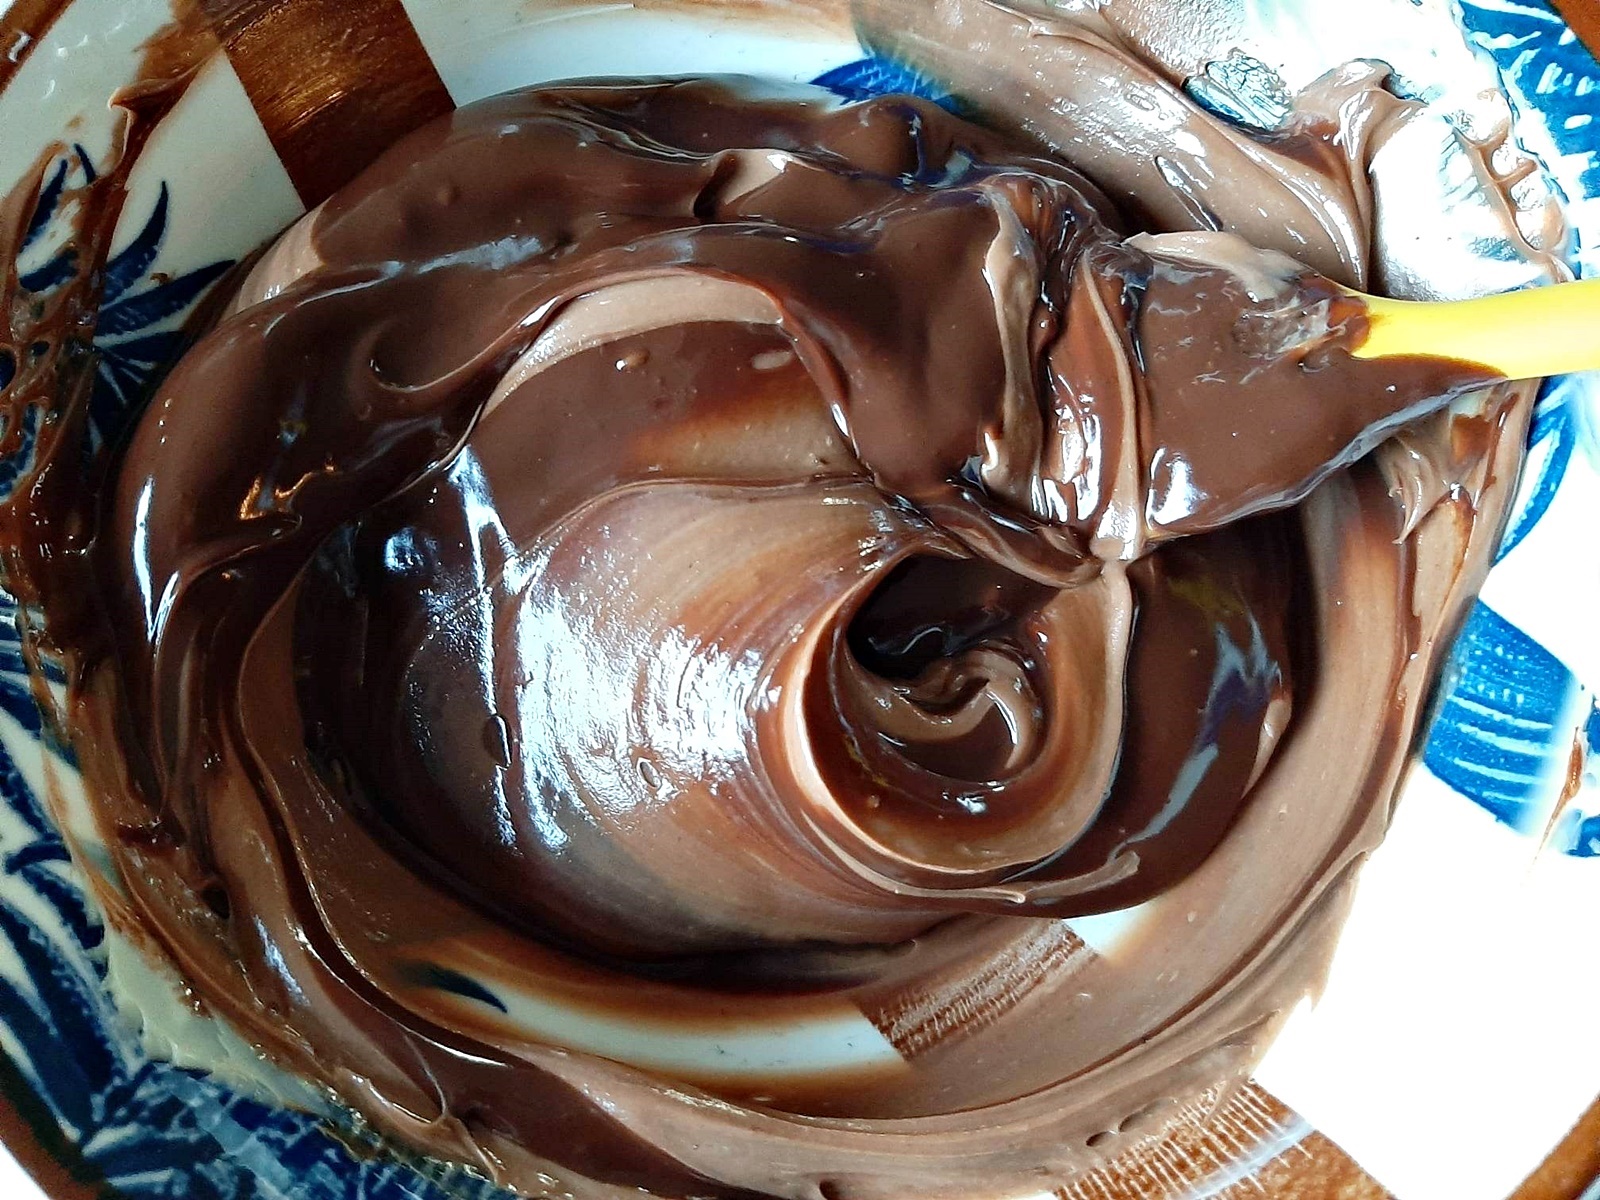 Reteta de crema de ciocolata pentru torturi si prajituri